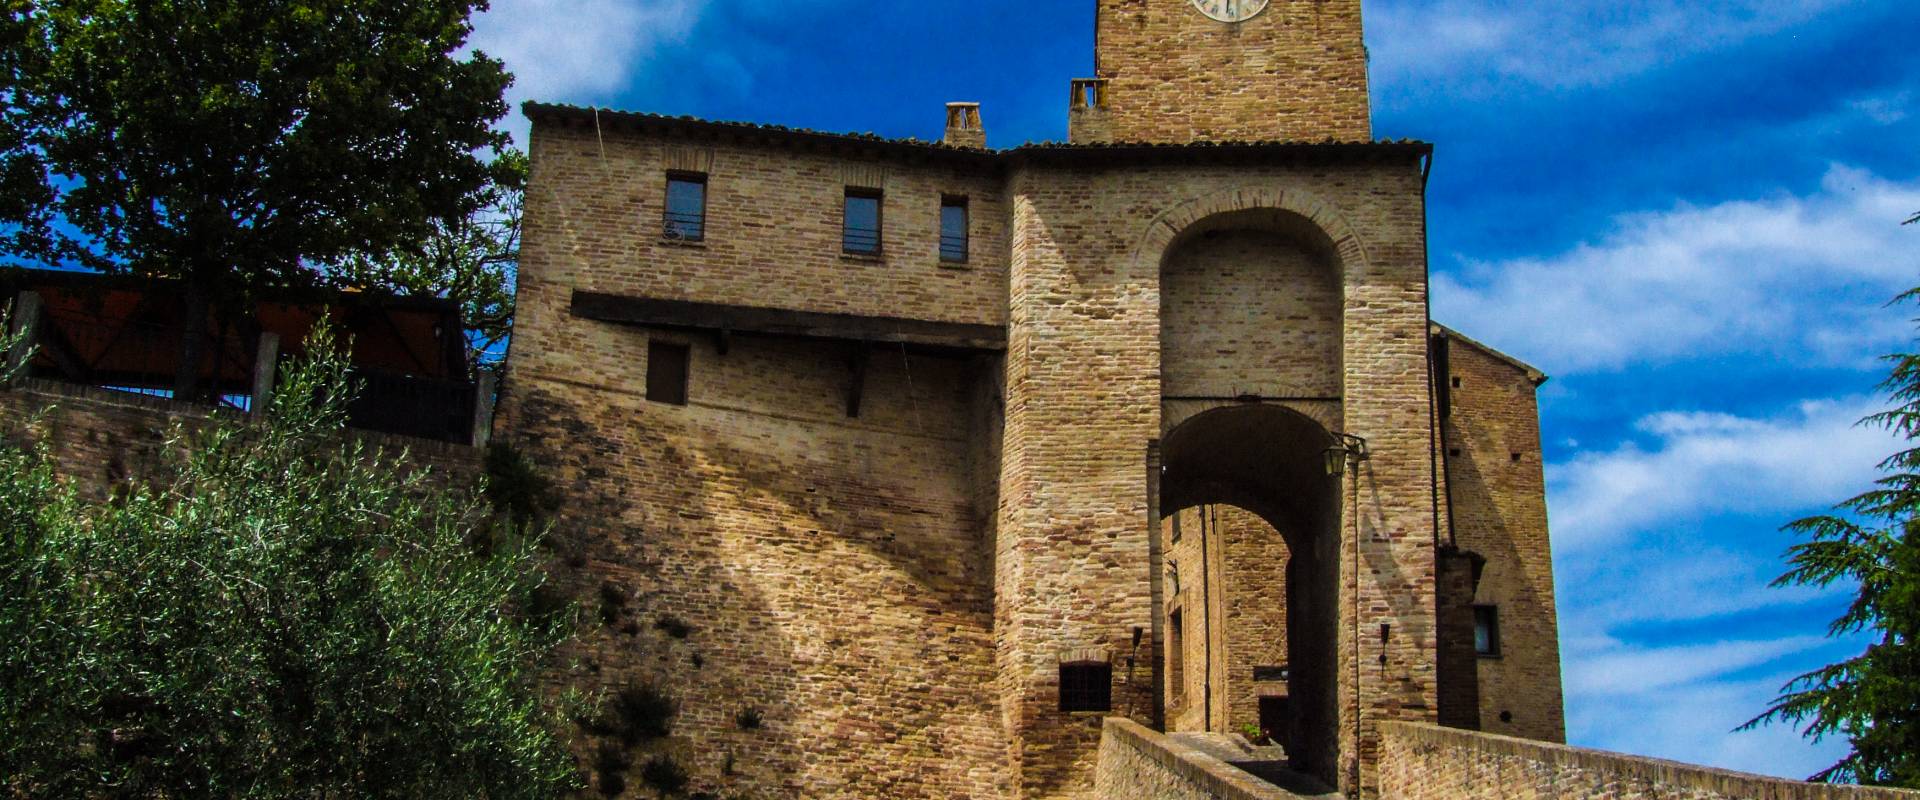 Porta del Castello - Montegridolfo 5 photo by Diego Baglieri